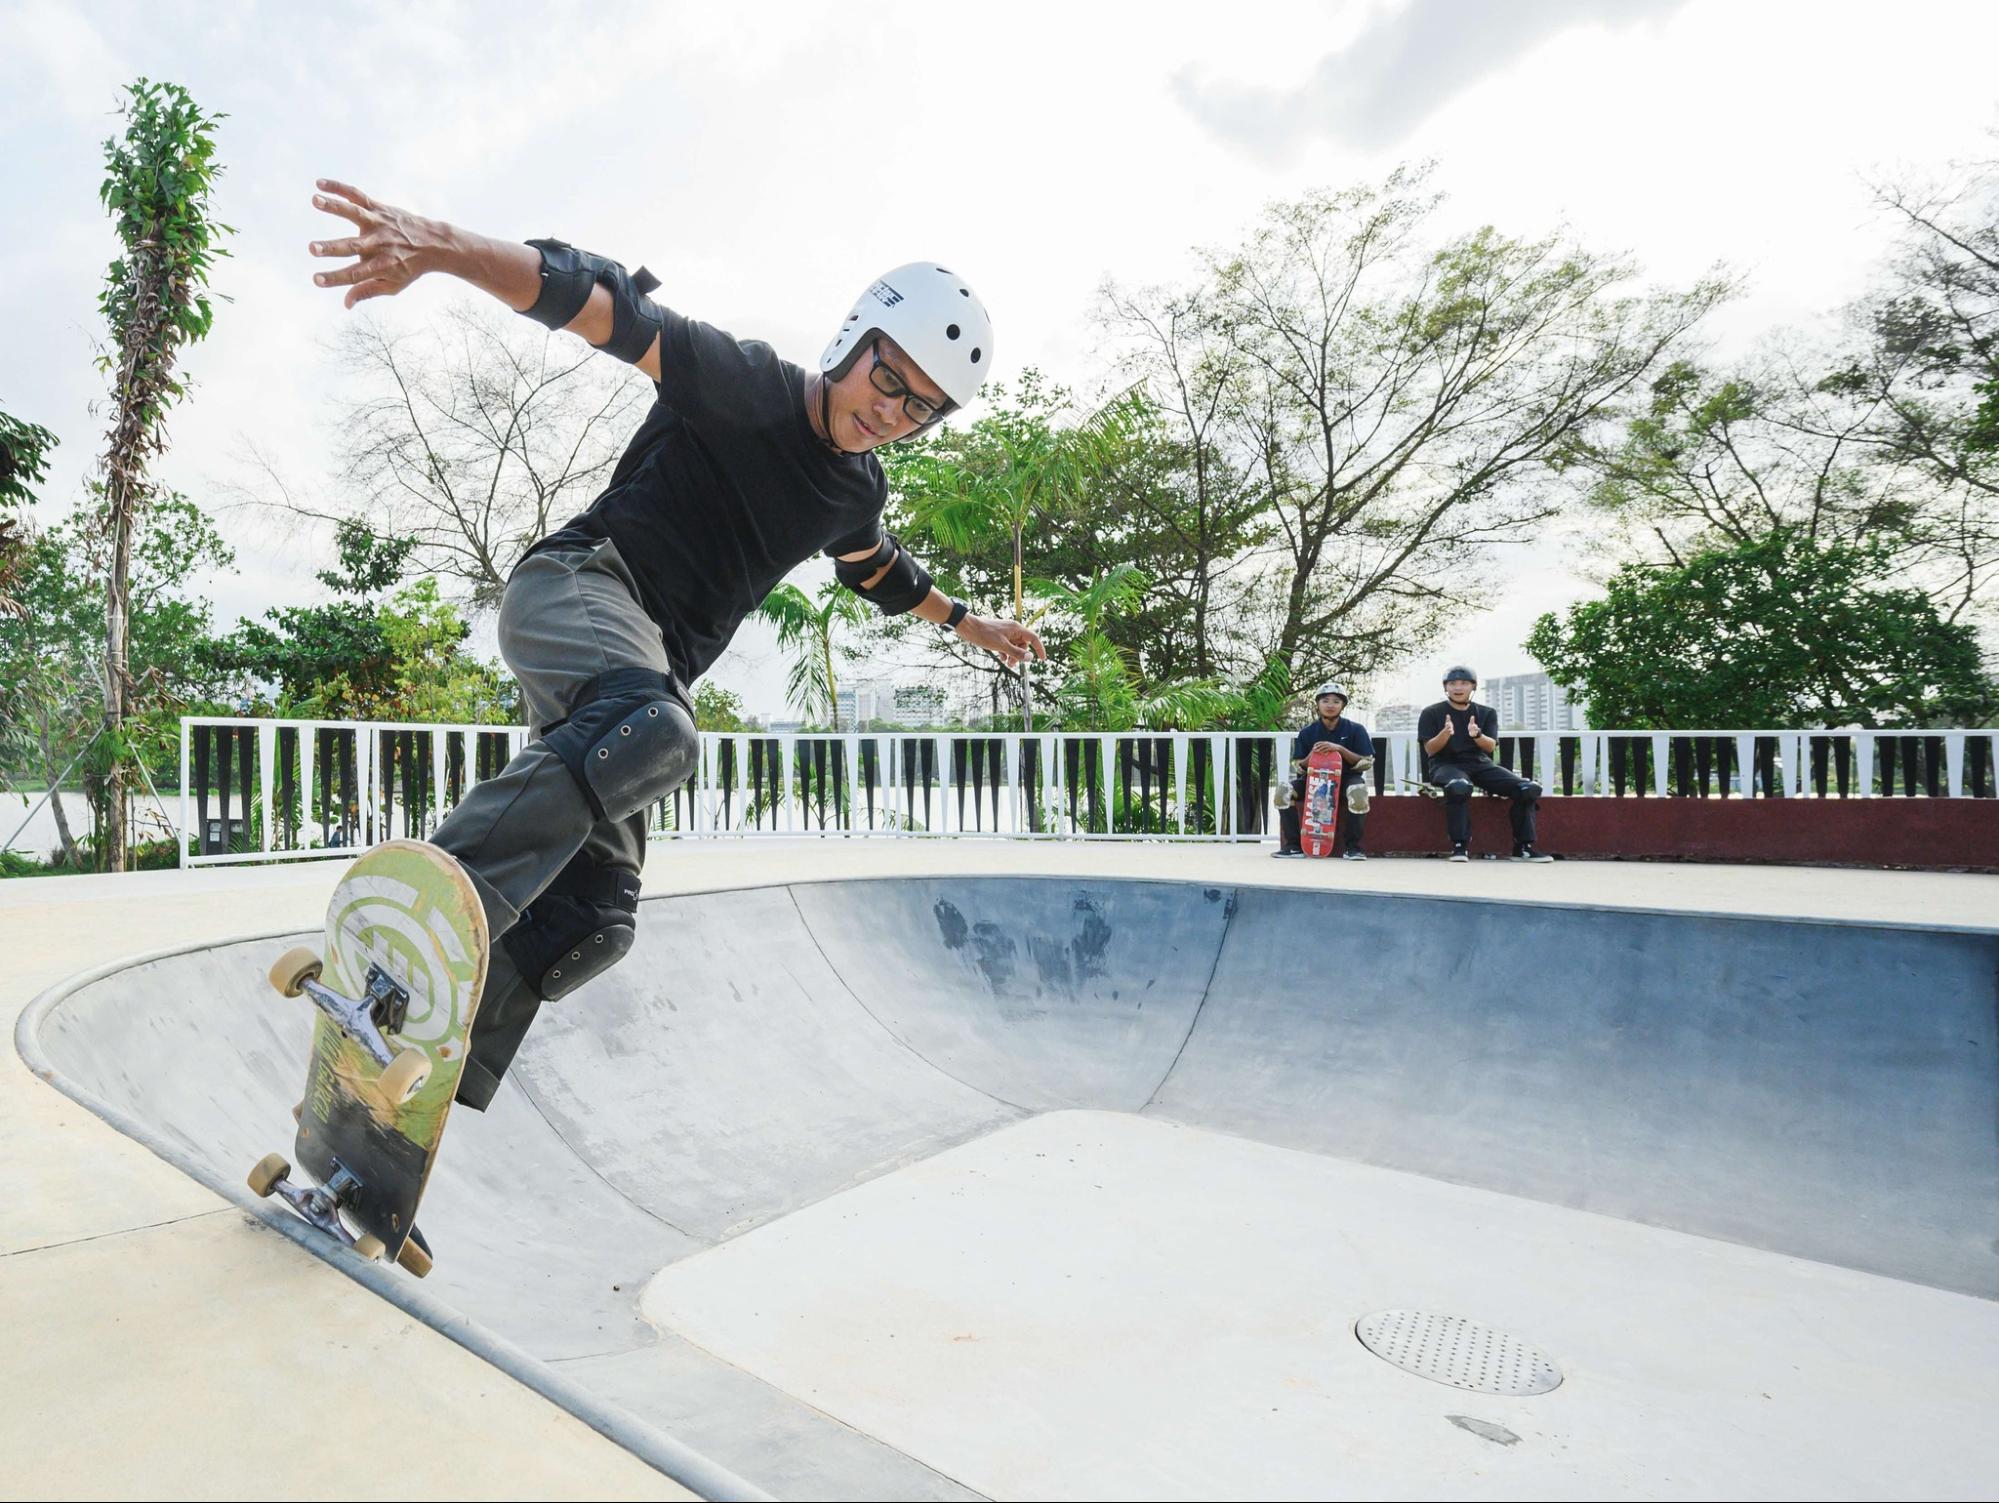 lakeside garden singapore - Skatepark @ Lakeside Garden